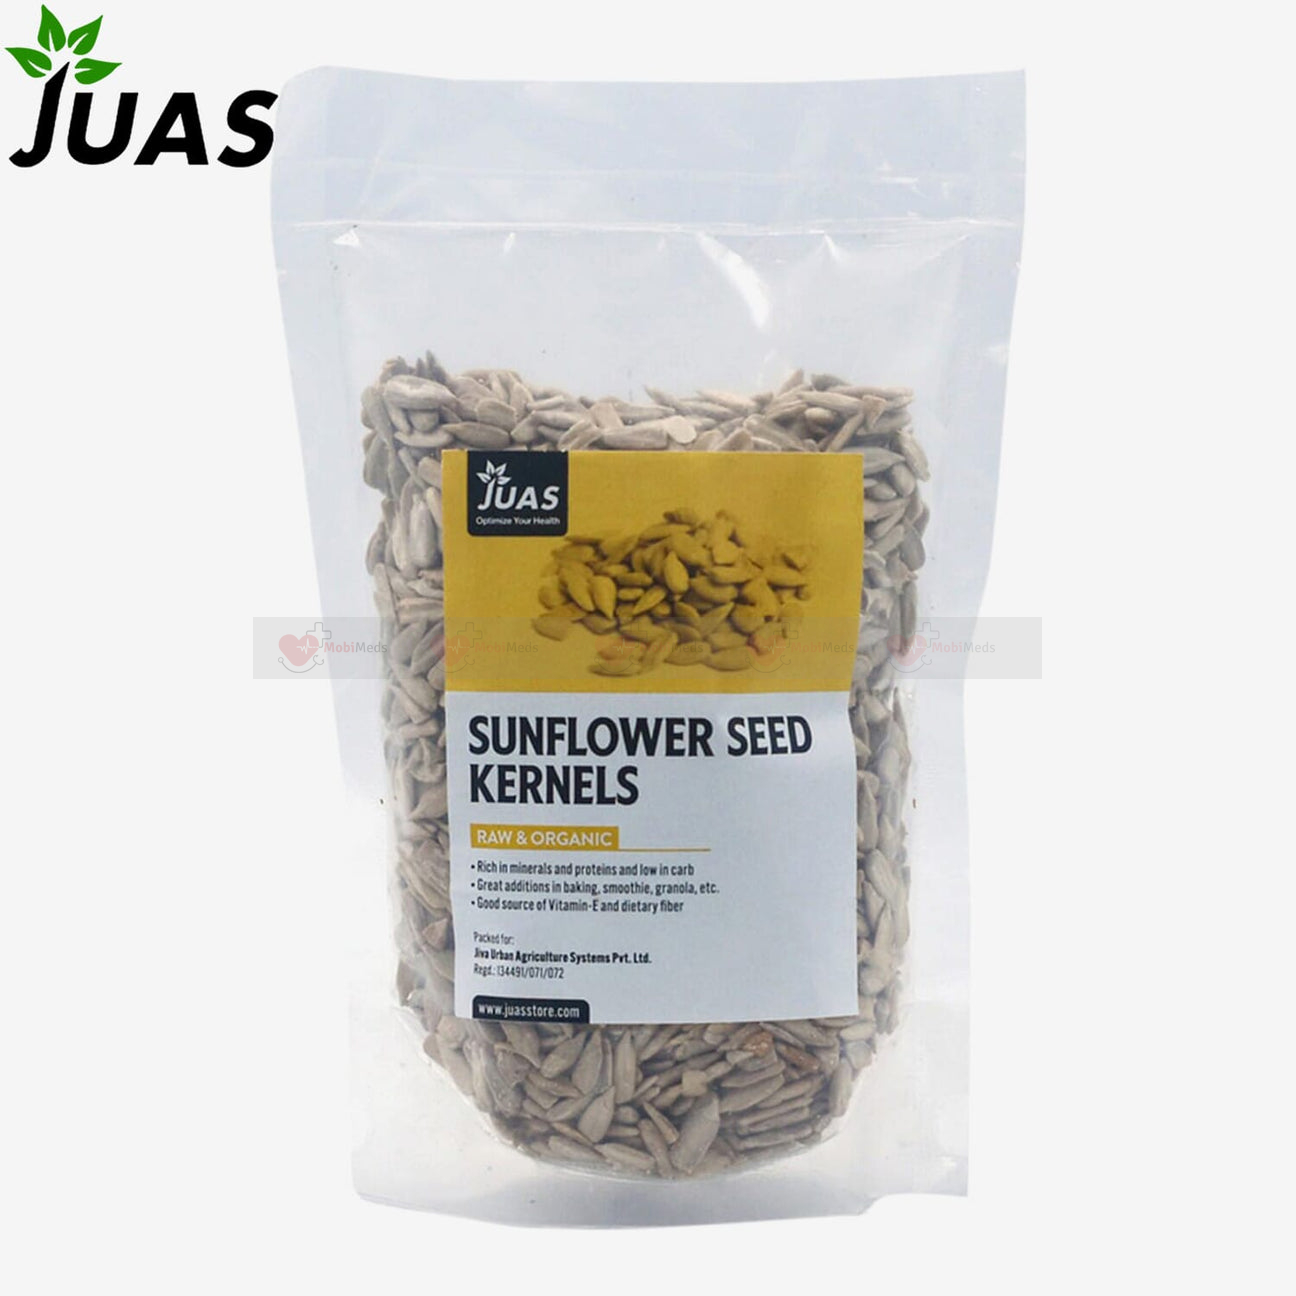 JUAS Sunflower Seed Kernels 250g